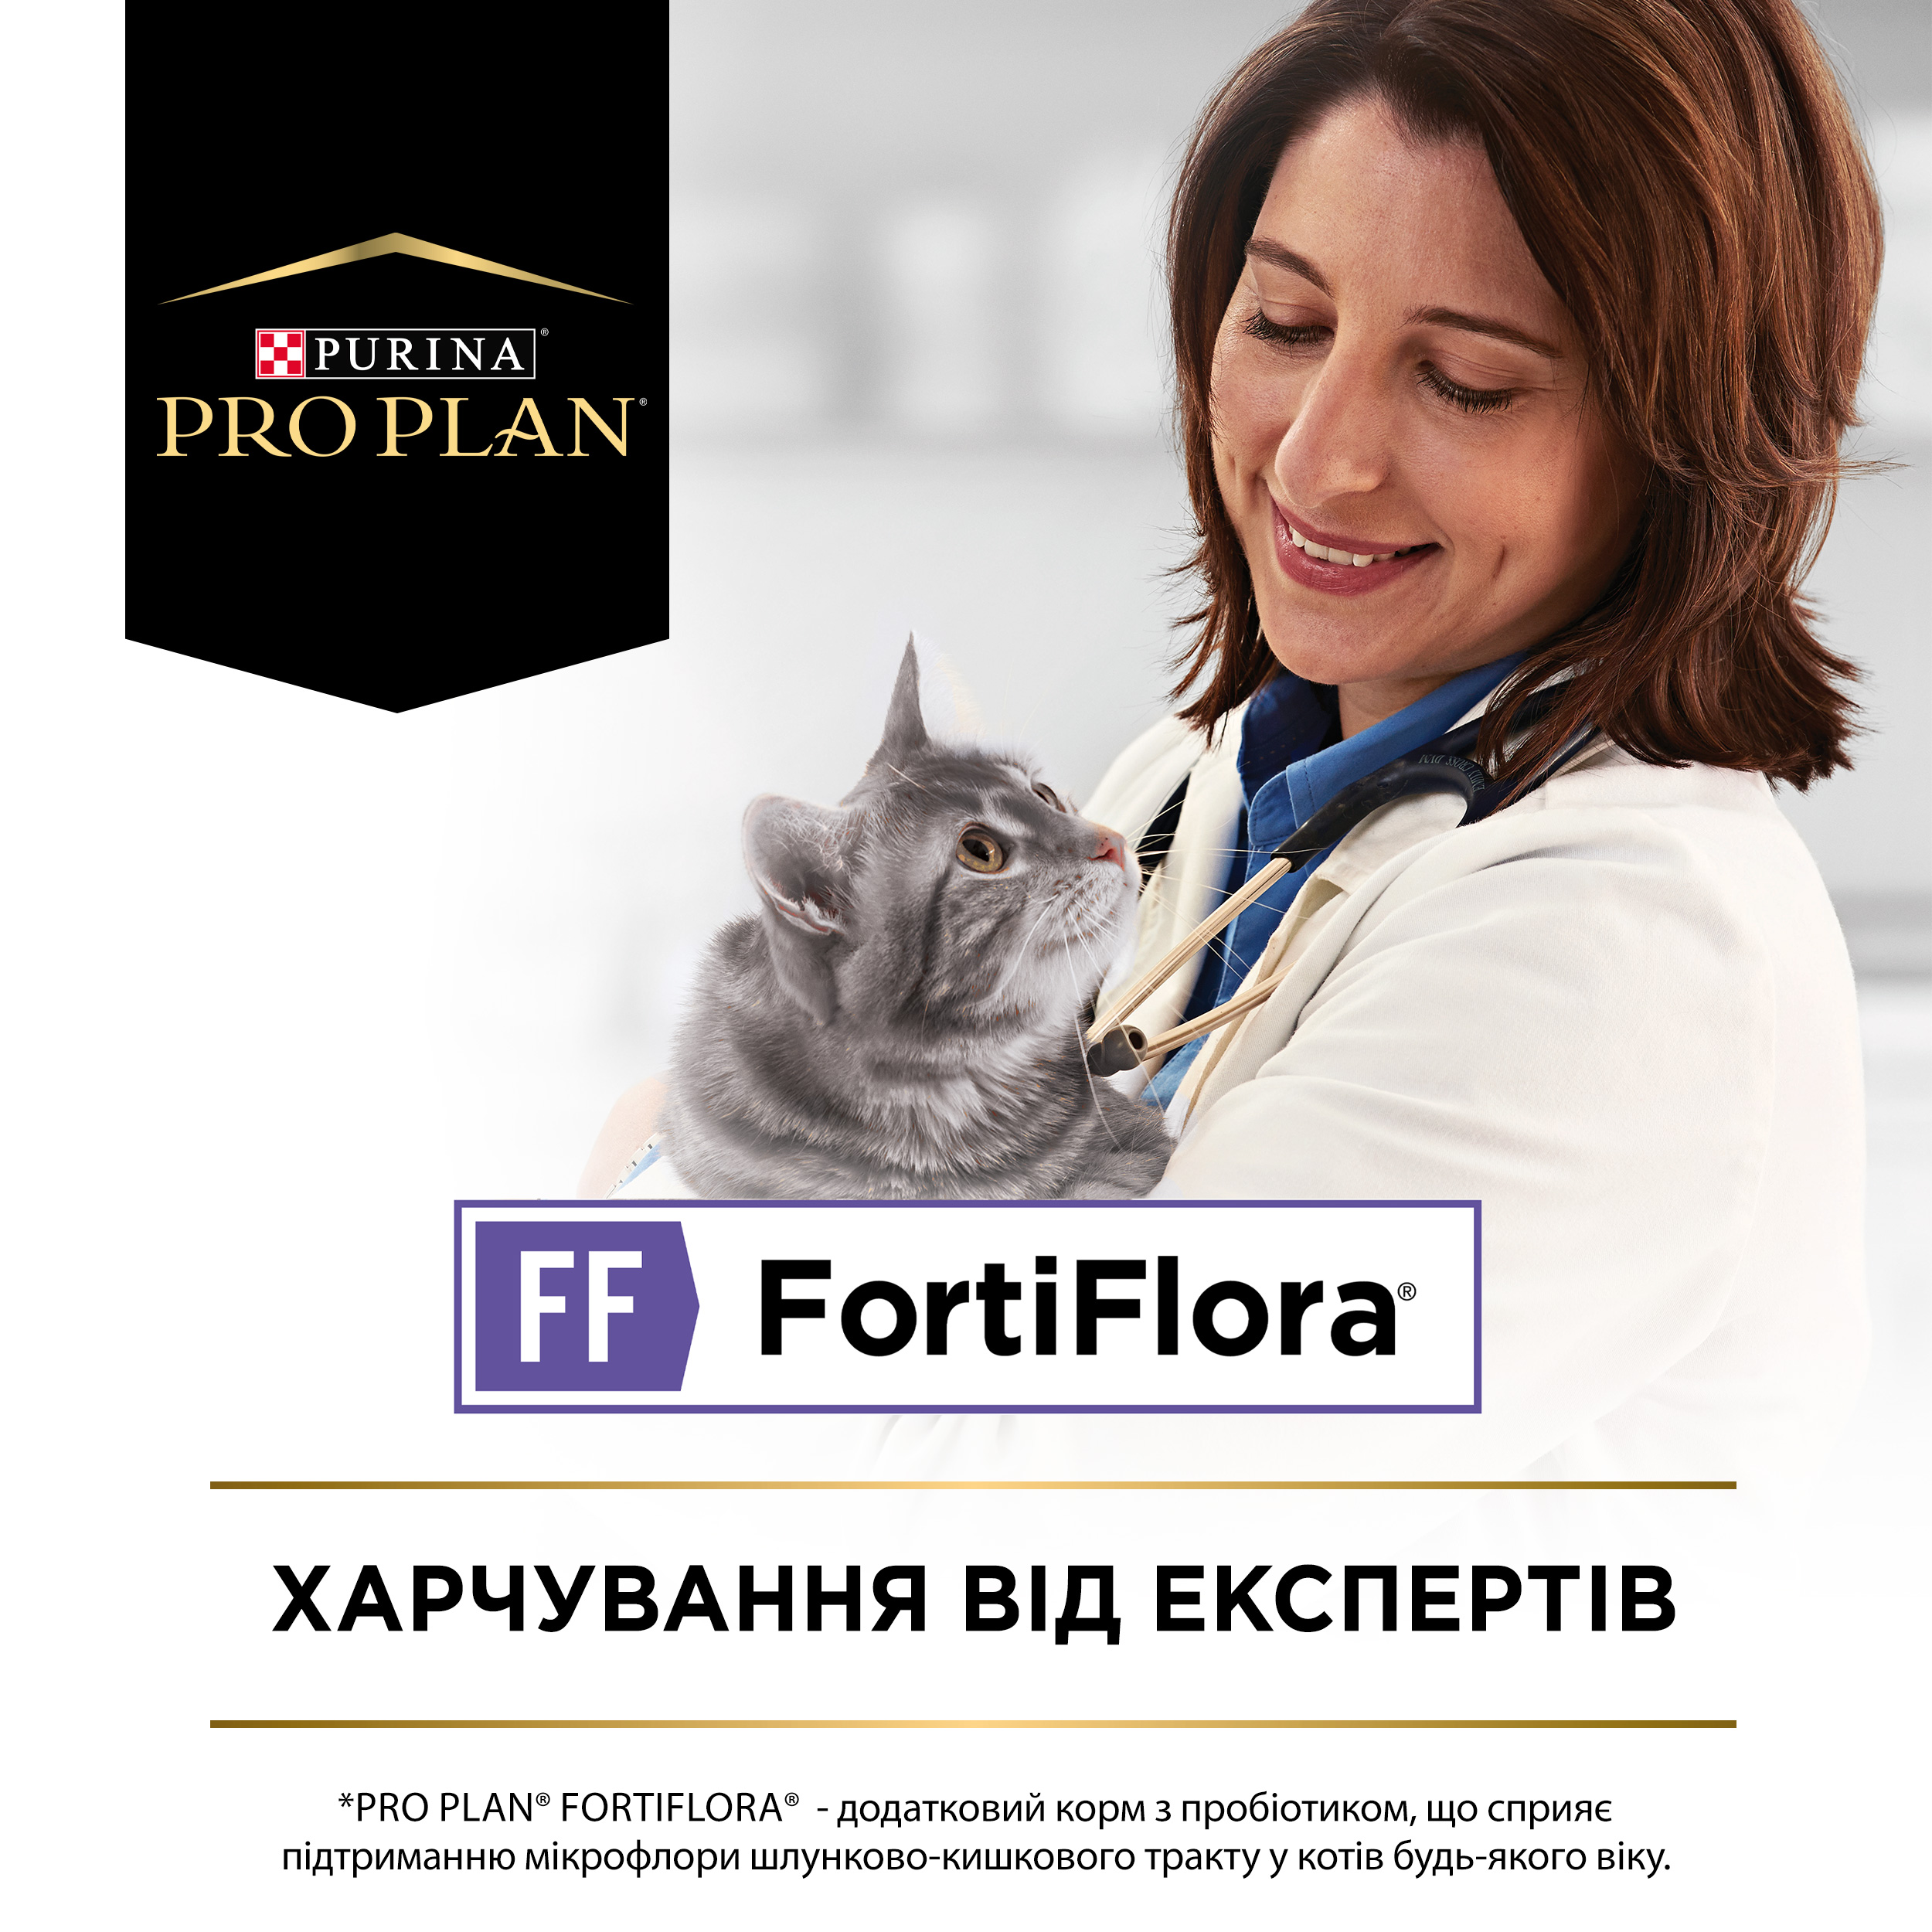 Кормова добавка з пробіотиком Purina Pro Plan FortiFlora для дорослих котів та кошенят для підтримання нормальної міклофлори шлунково-кишкового тракту 7 г (7 шт. х 1 г) (12486287) - фото 6